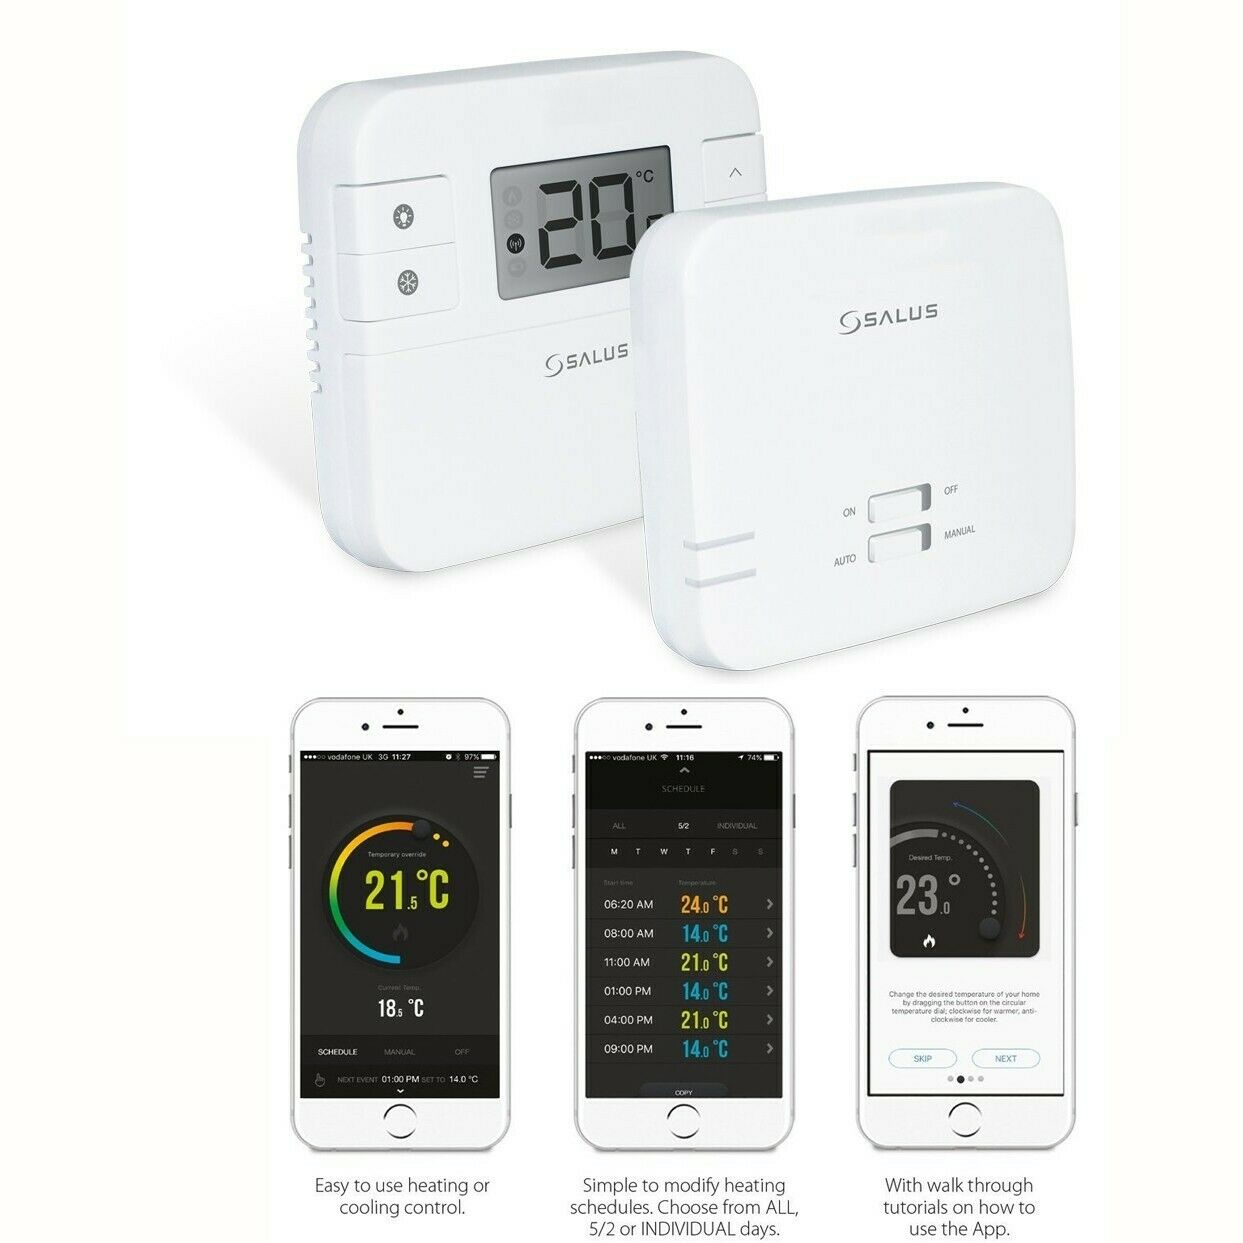 SALUS RT310iSR Internetový bezdrôtový termostat